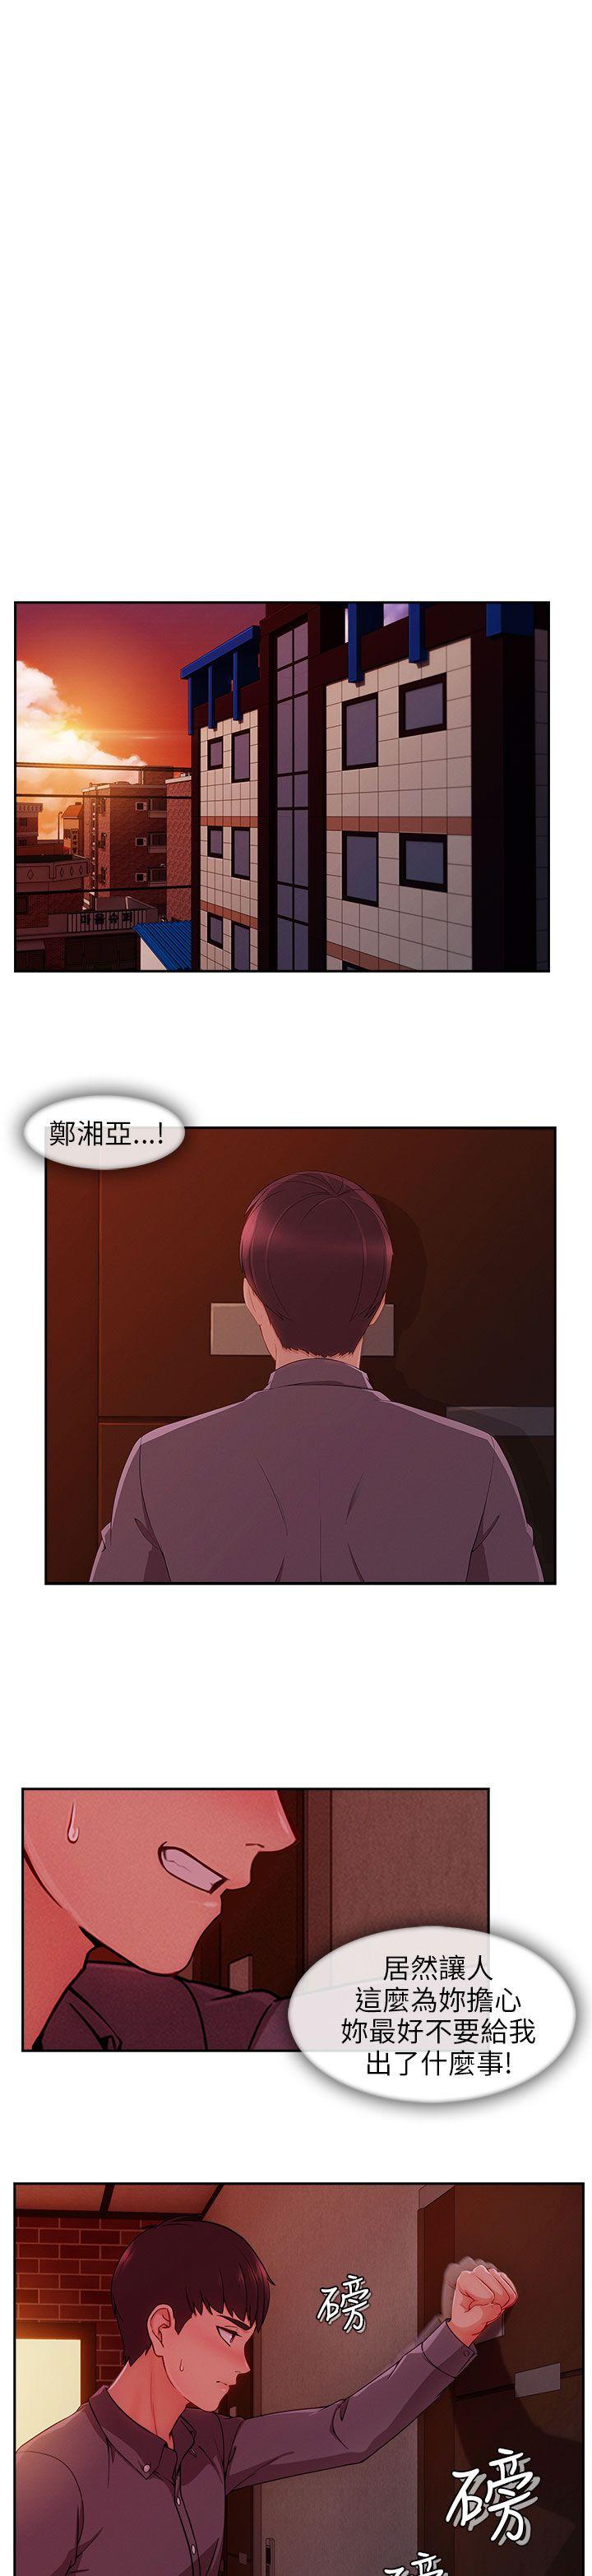 《湘亚:积极追求攻势》漫画 第29话